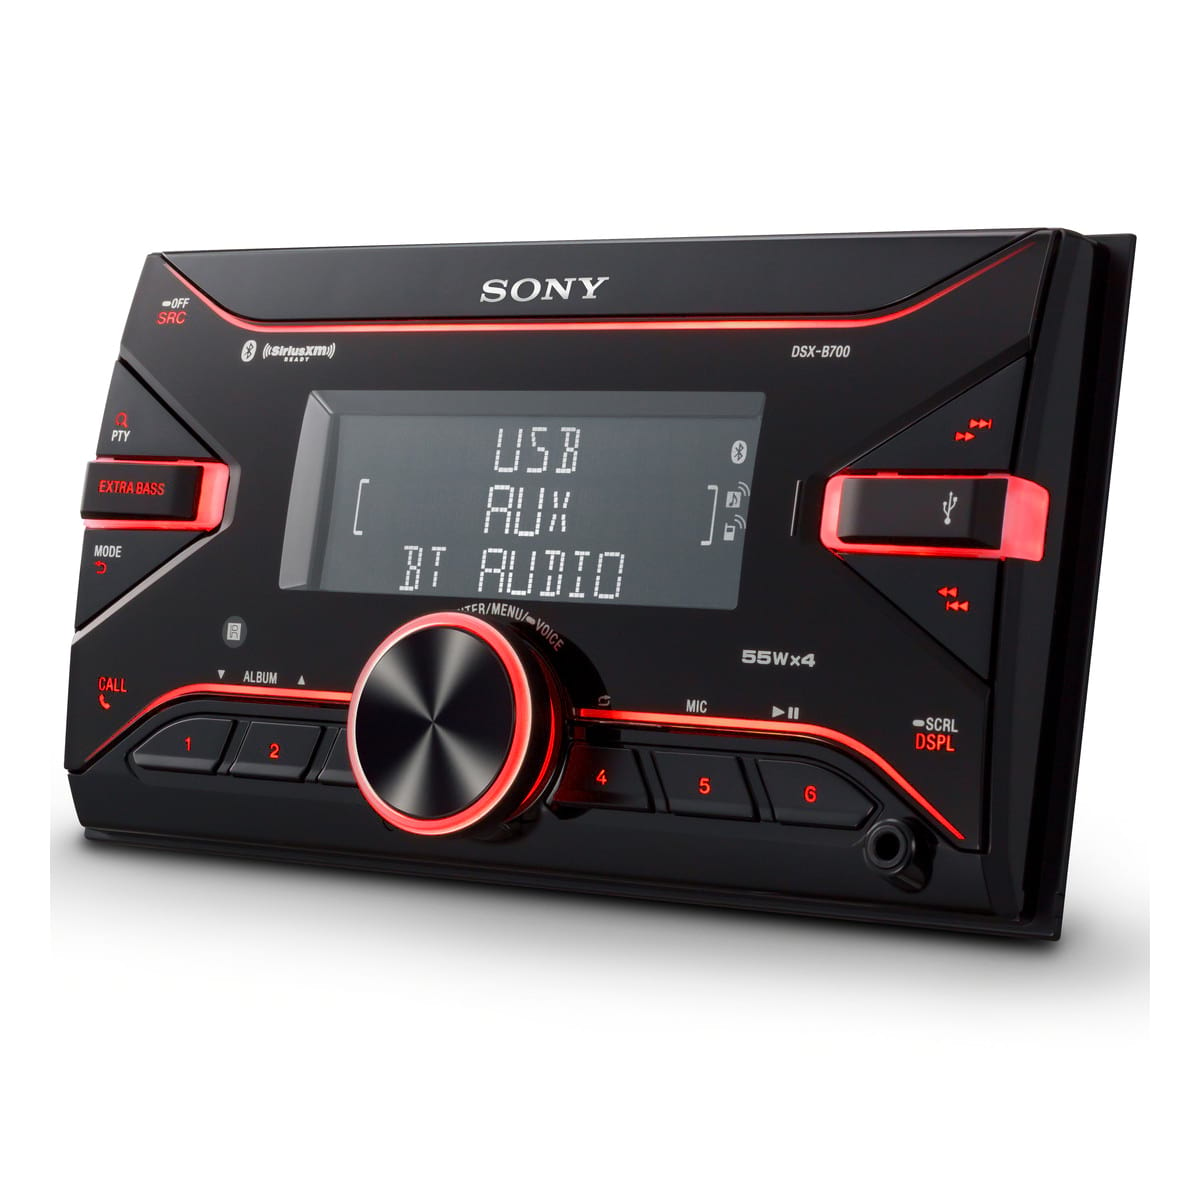 SONY - Autoradio MEXN4300BT - Bluetooth